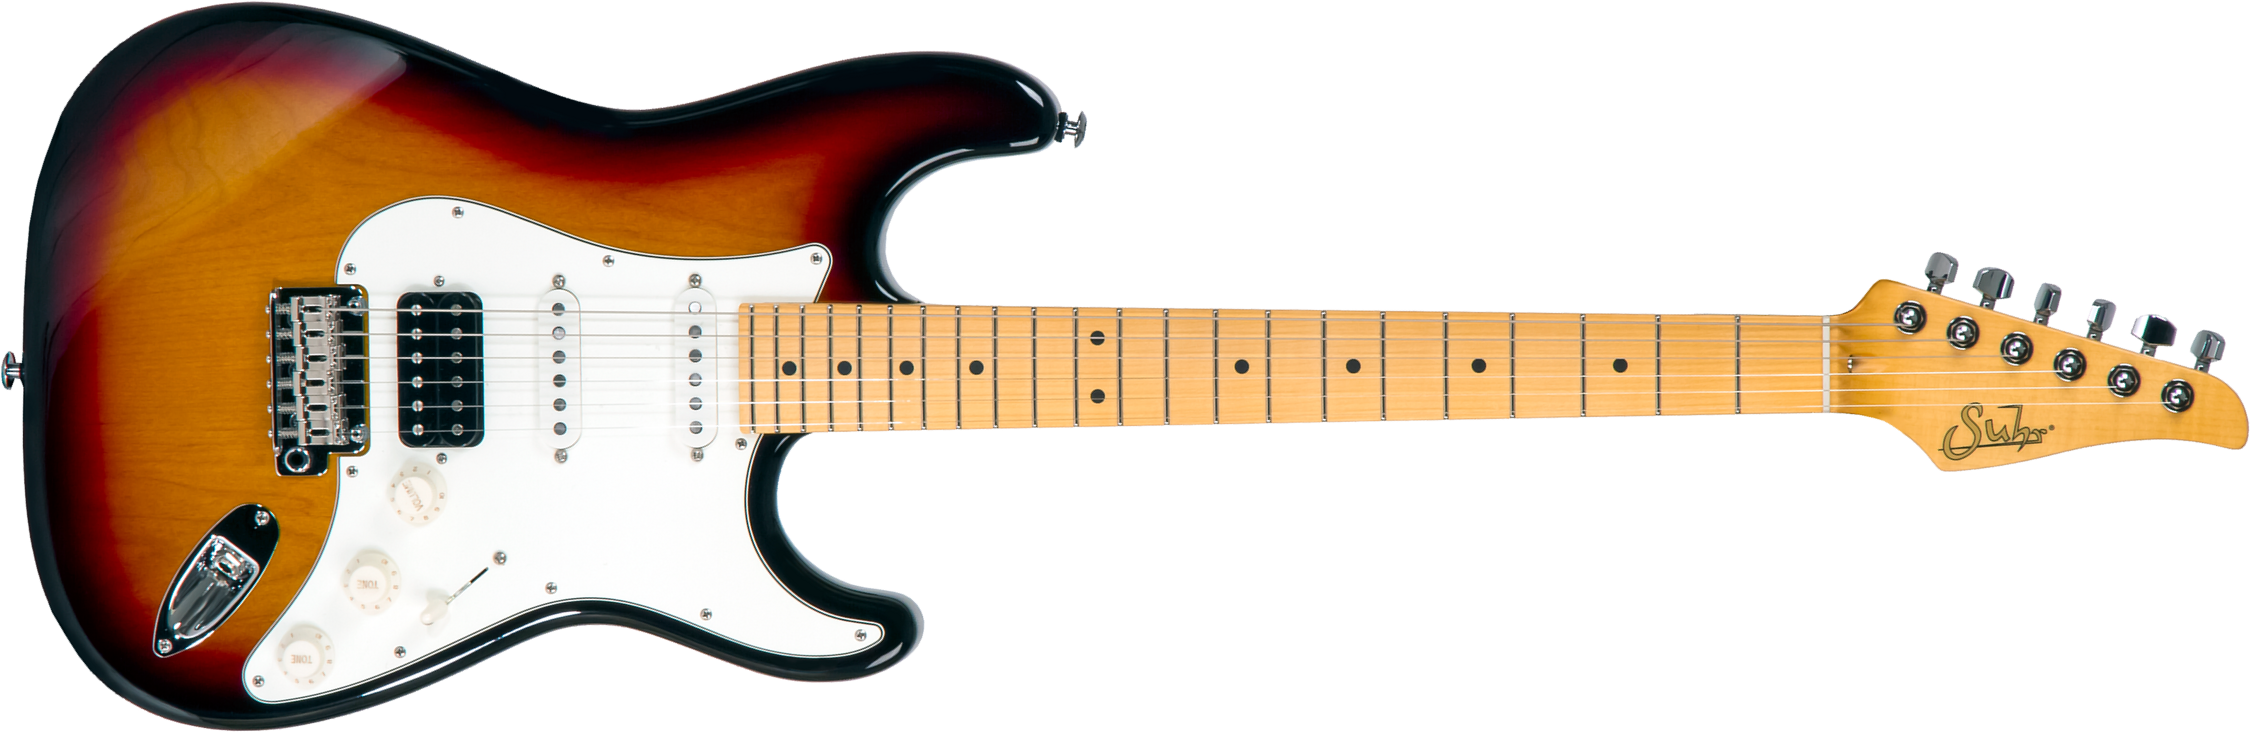 Suhr Classic S 01-cls-0003 Hss Trem Mn #70325 - 3 Tone Burst - Str shape electric guitar - Main picture